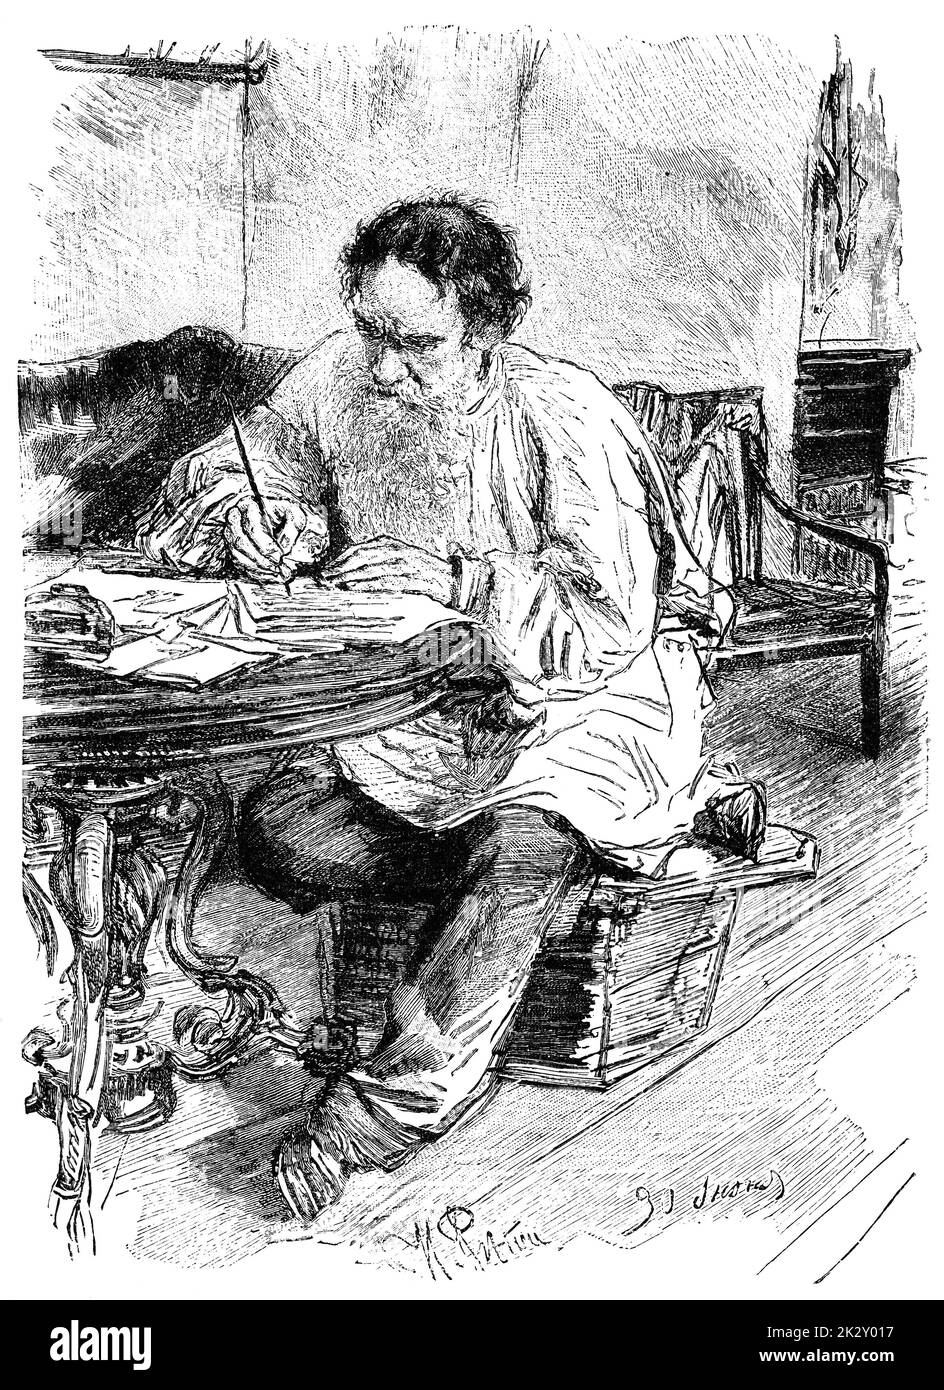 Ritratto del conte Lev (Leo) Nikolayevich Tolstoy - uno scrittore russo considerato uno dei più grandi autori di tutti i tempi. Illustrazione del 19 ° secolo. Sfondo bianco. Foto Stock